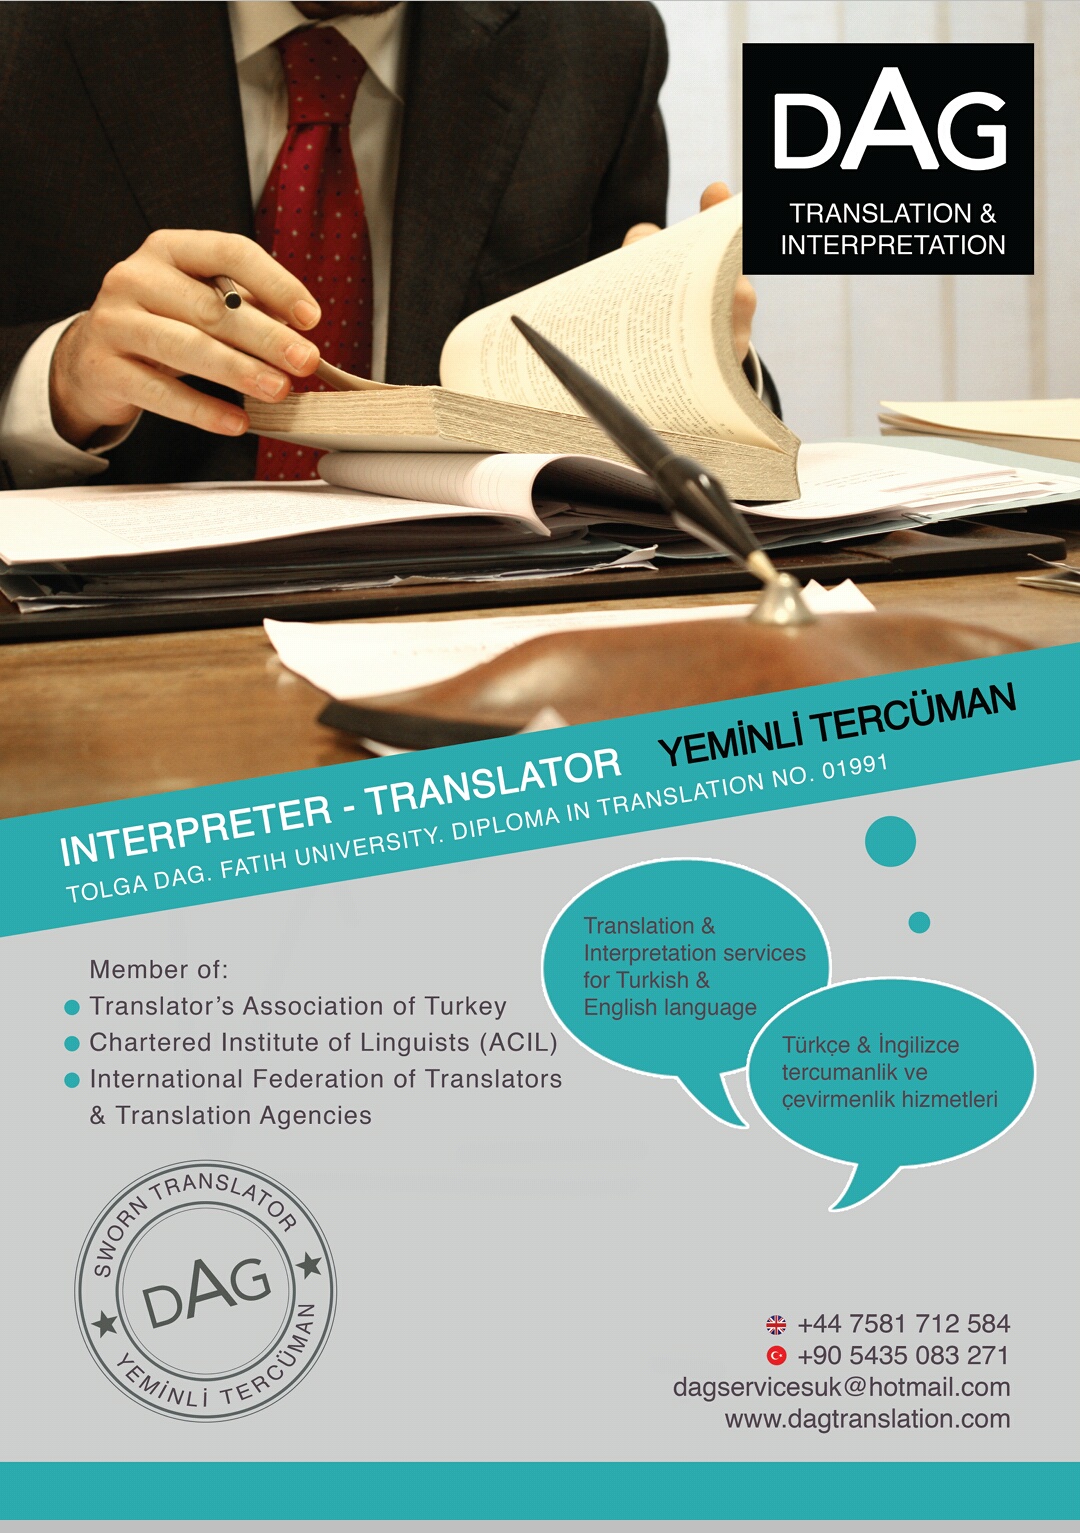 Dag translation and interpretation services uk